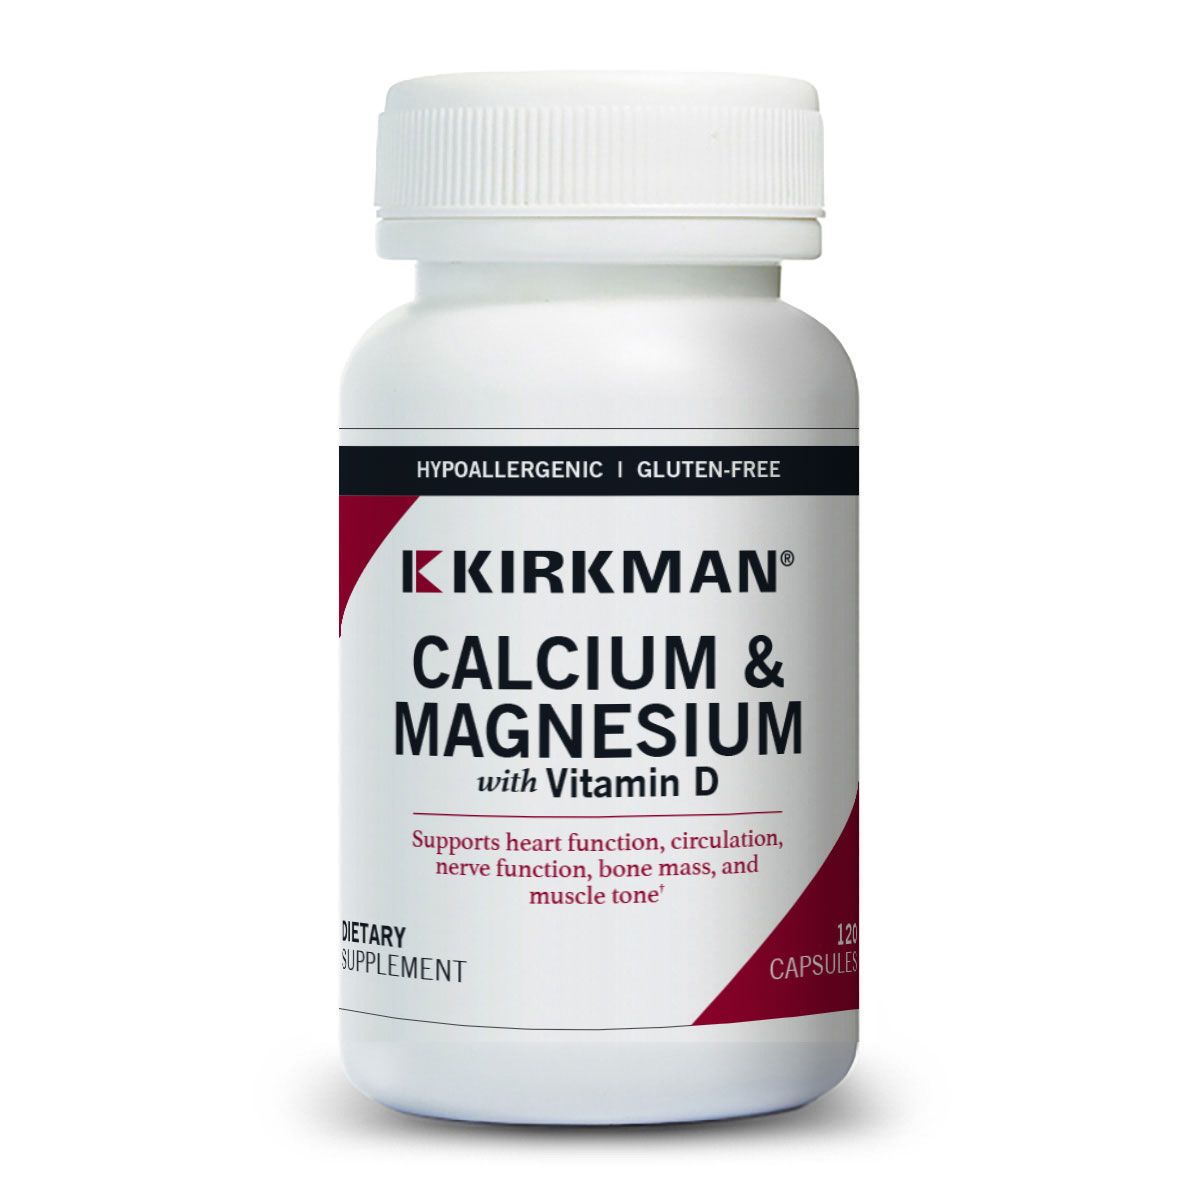 Calcium & Magnesium with Vitamin D - Hypoallergenic